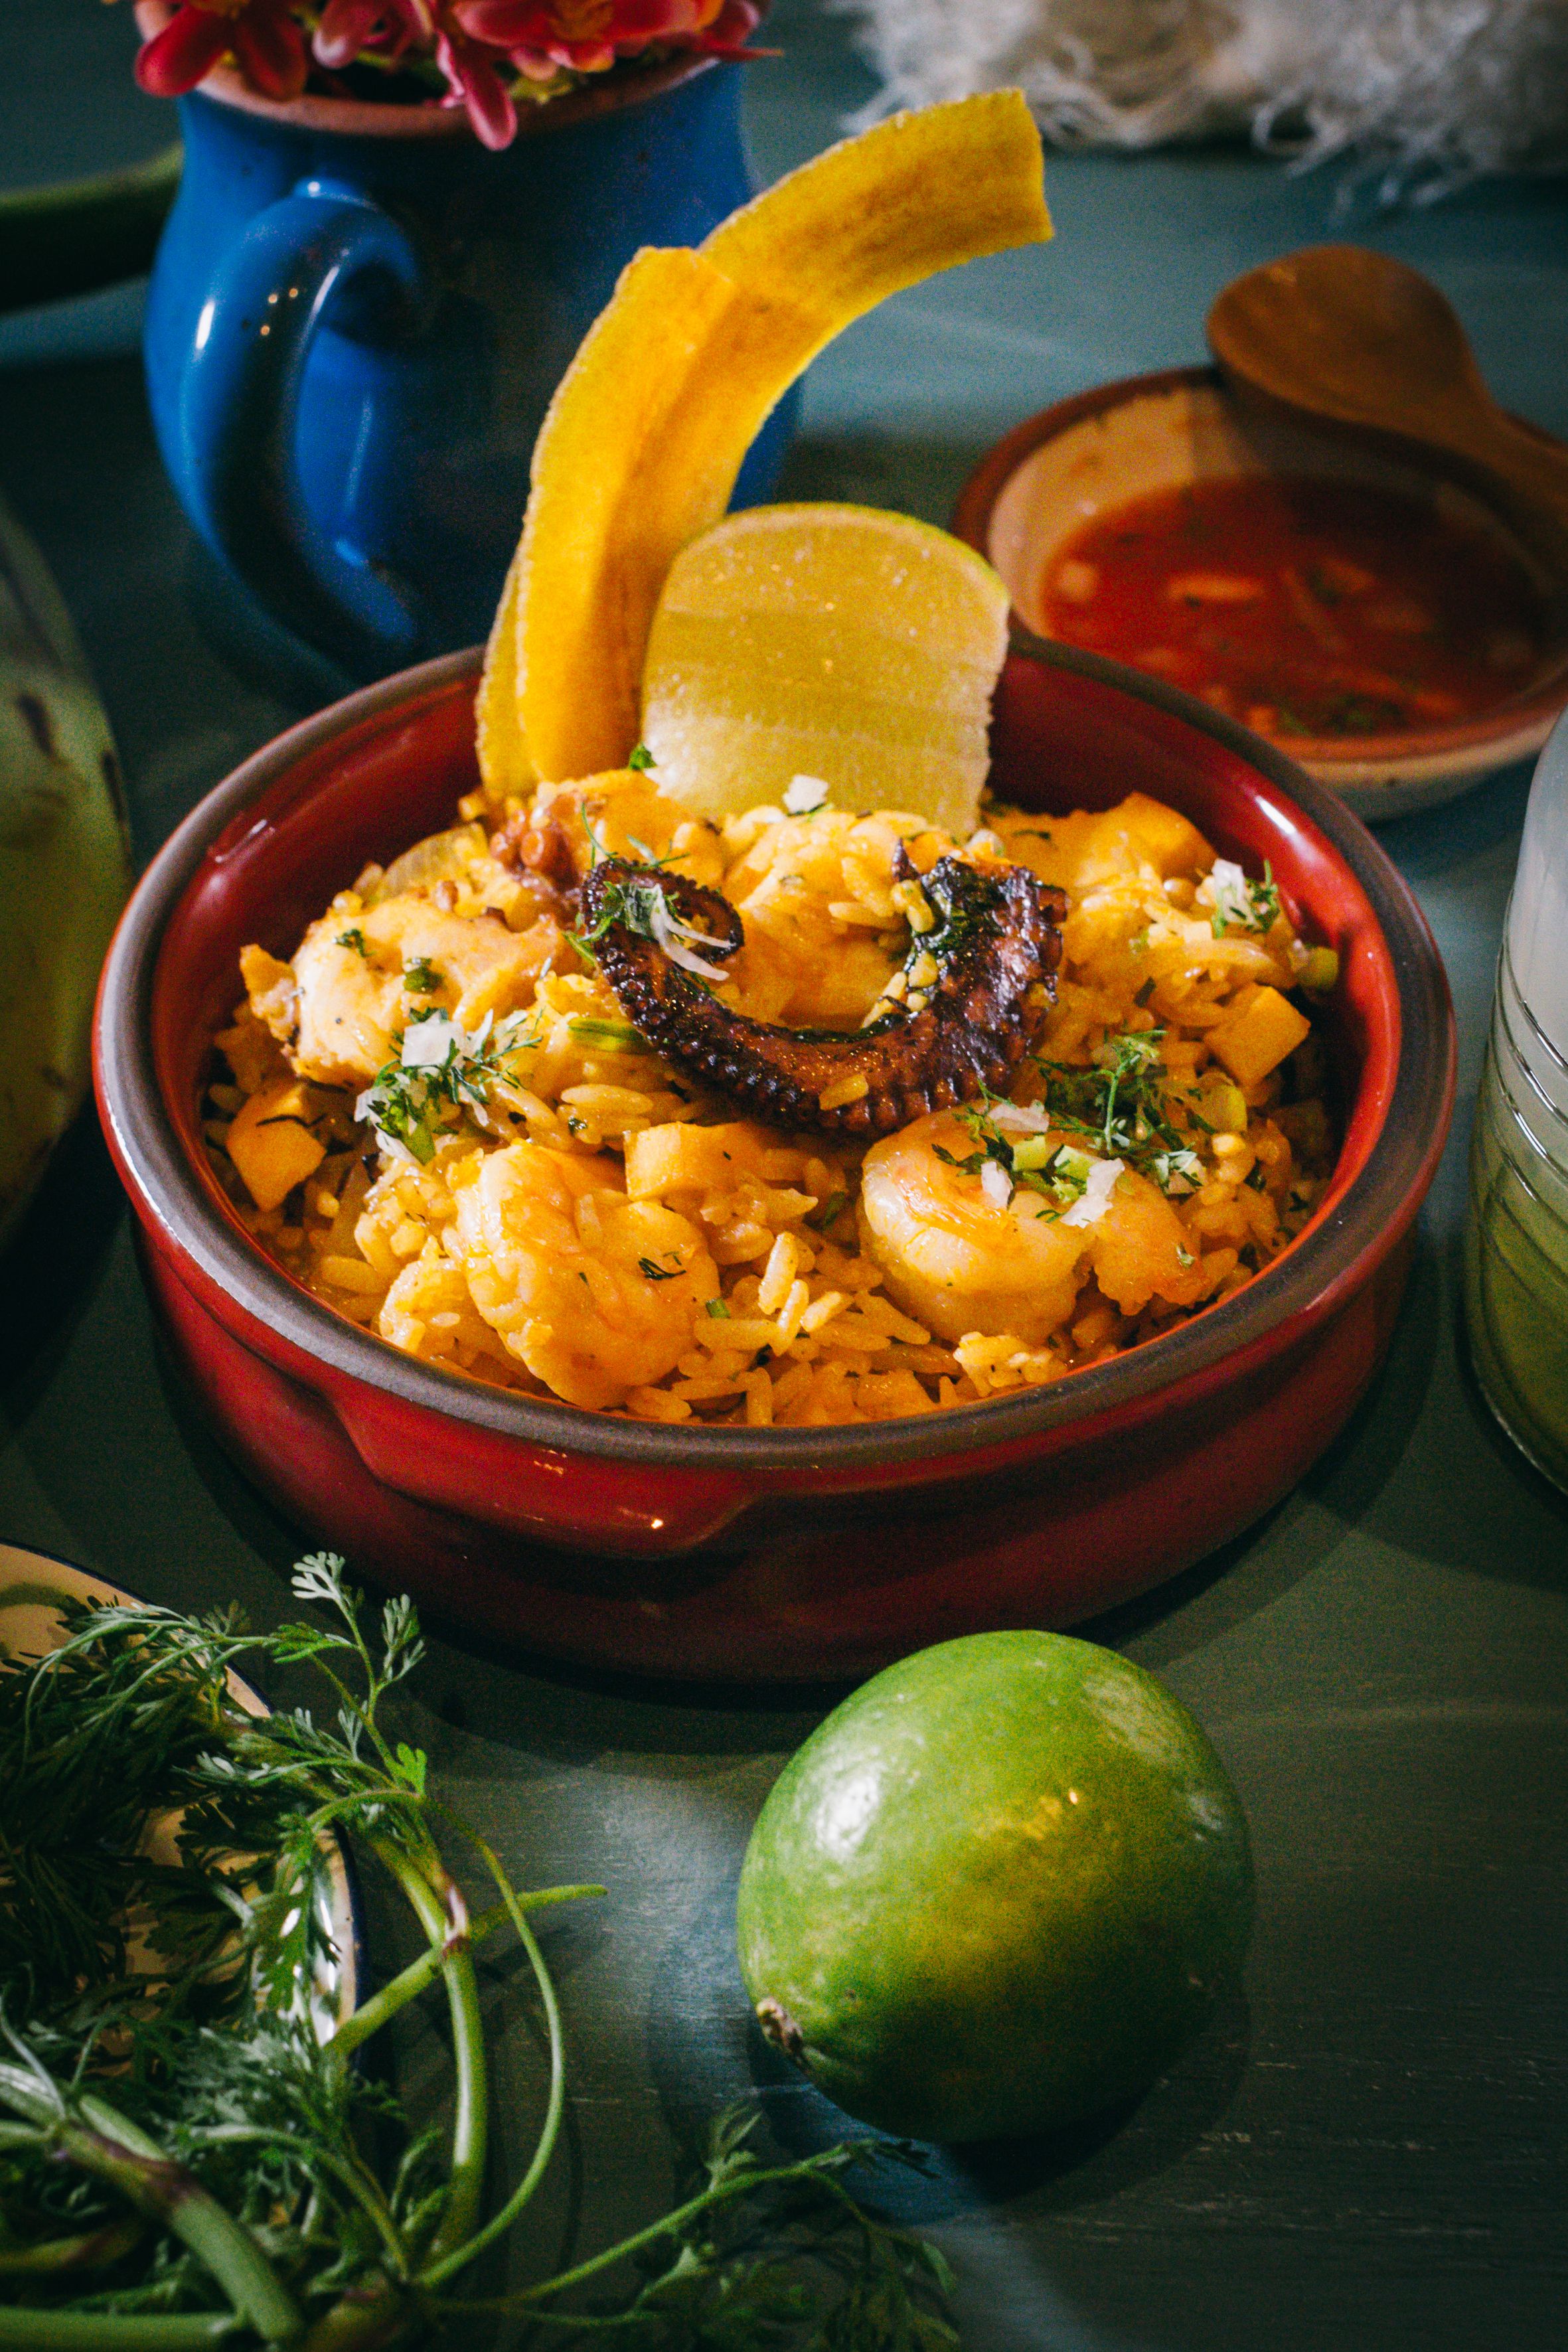 Arroz marinero es uno de los platos del festival gastronómico Guayaquil de mis sabores, del Unipark Hotel, que este 2022 cumple 25 de ofrecer lo mejor de la cocina local.